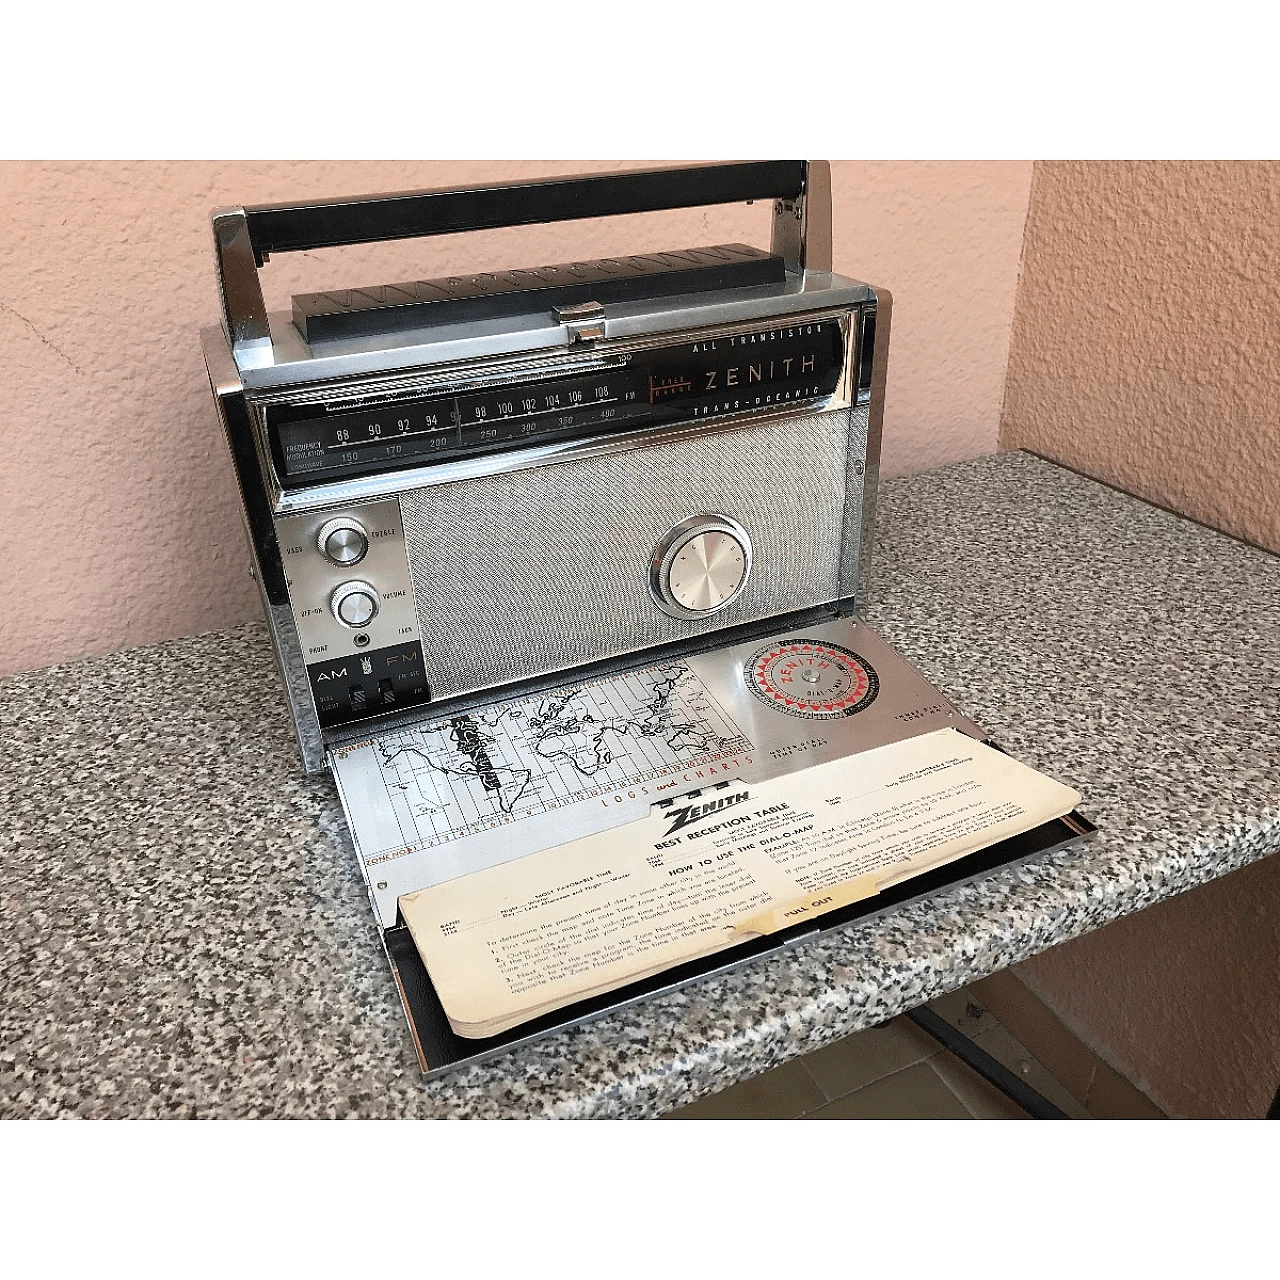 Trasmettitore radio ad onde Zenith di origine americana, anni '40 1061009